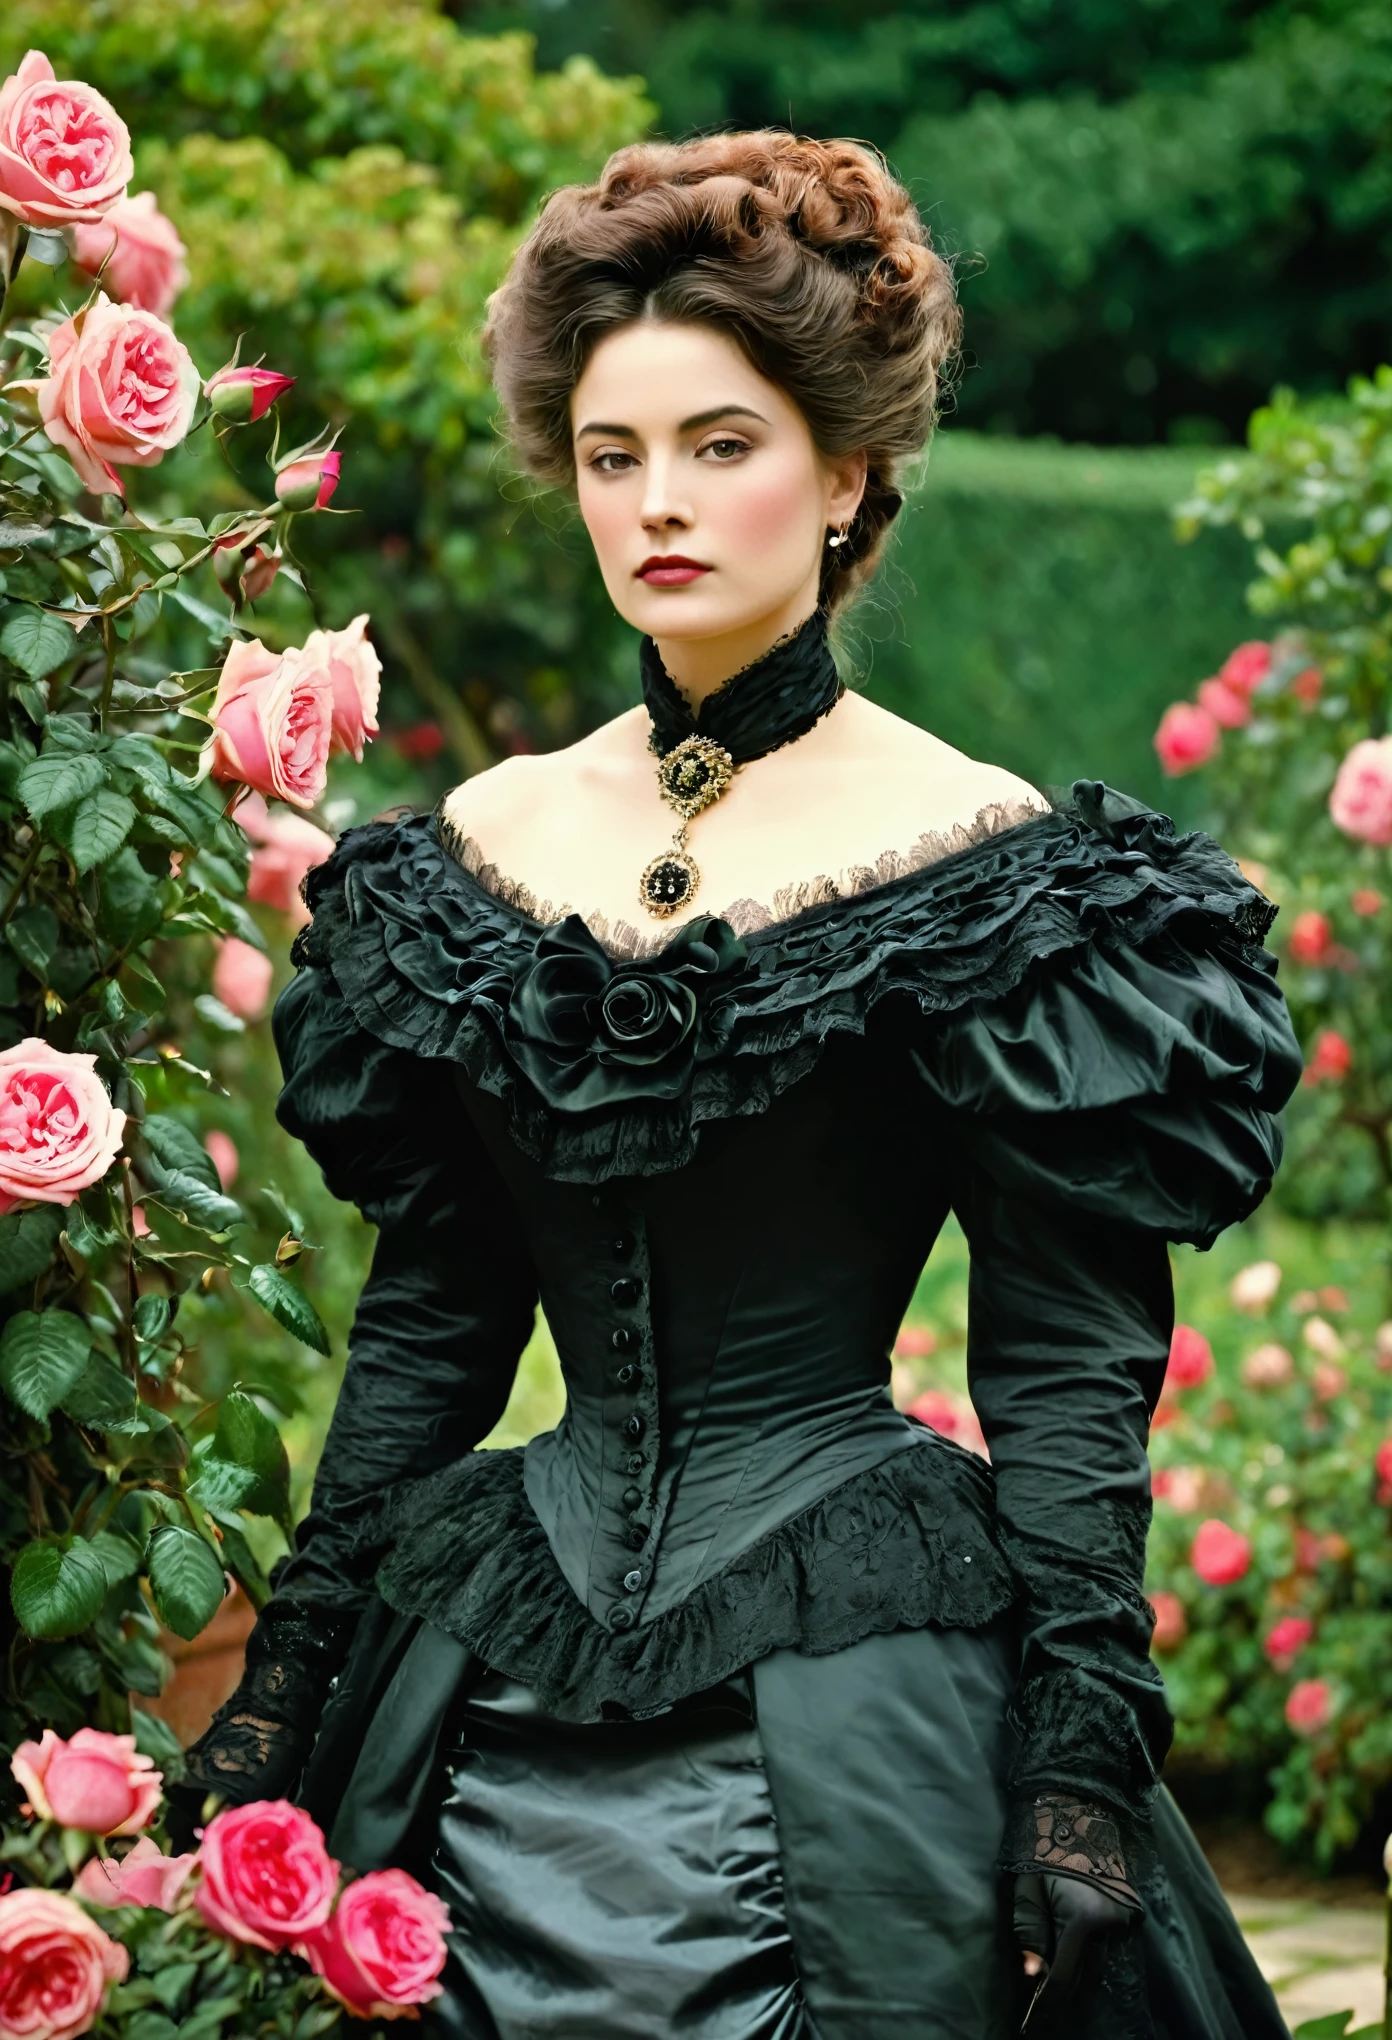 (( retrato de mujer)), ( Estilo de moda victoriana), Jardín de rosas, CLÁSICO, fila podrida, estilo ingles, Nobleman, eleganteismo,escena de opulencia --c 22 --ar 27:40 --s 999 --v 6.0